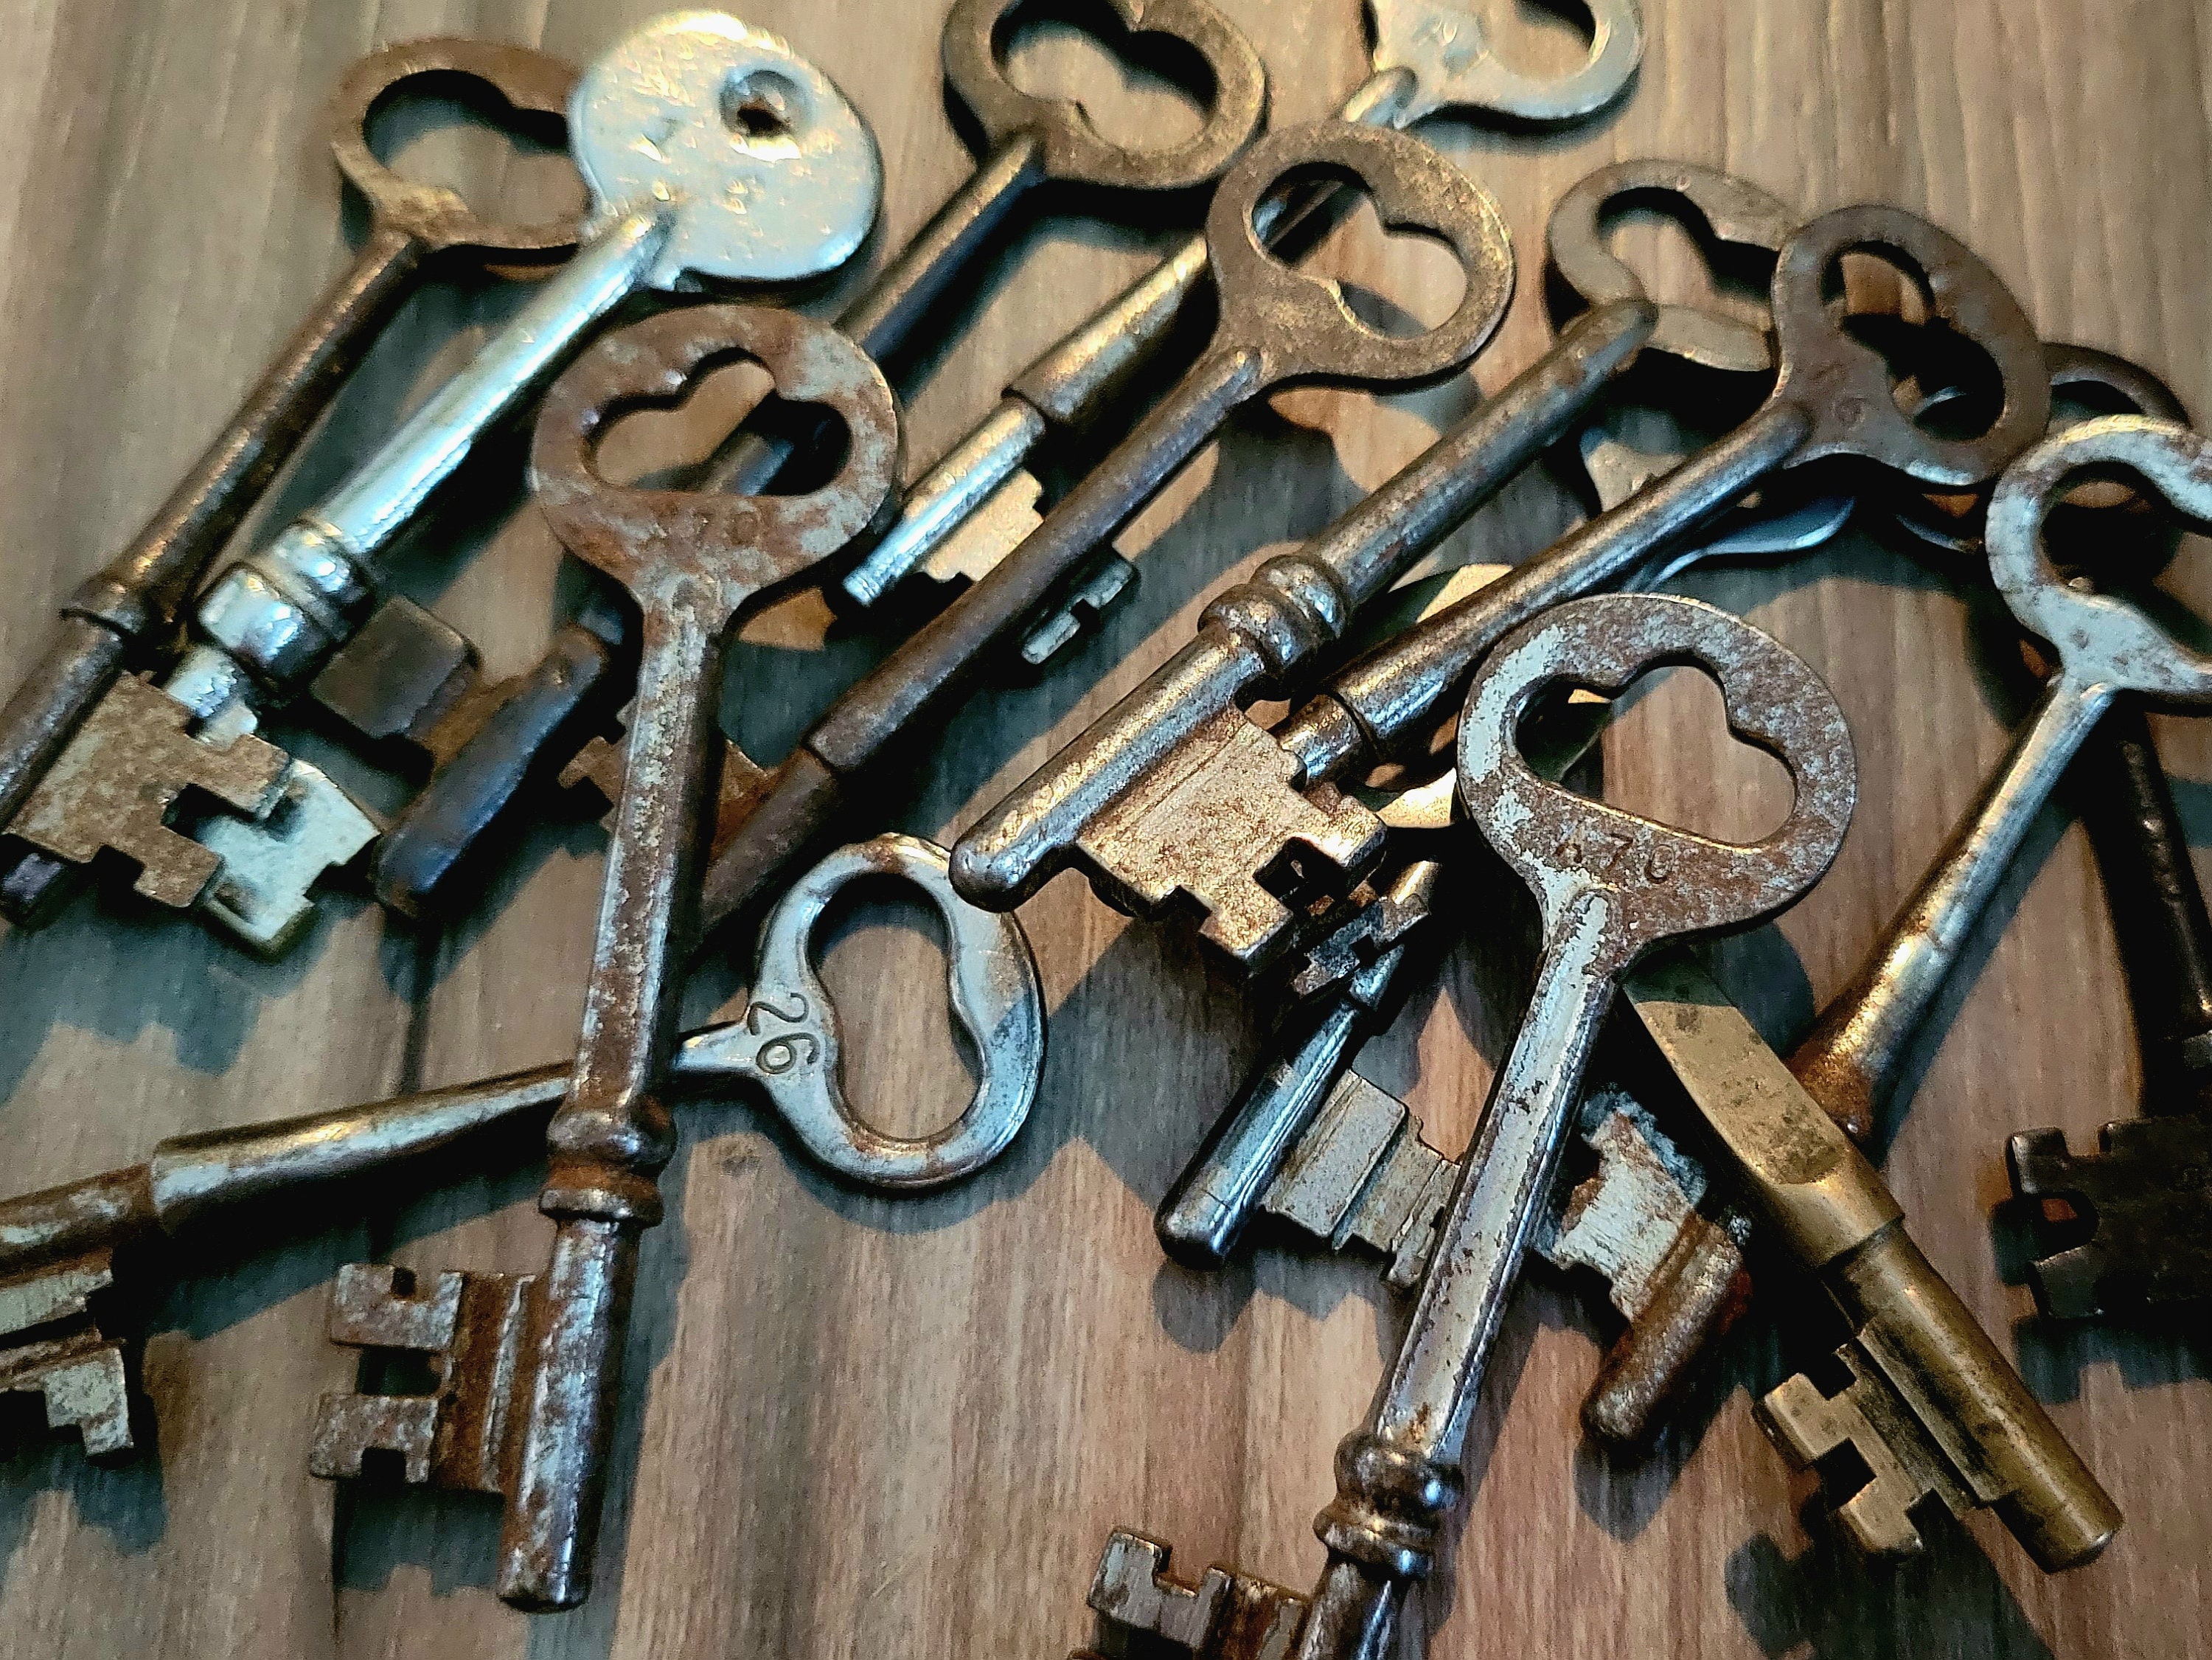 Vintage Keys, Skeleton, Jail Keys, Handcuff Keys, Rusty Keys